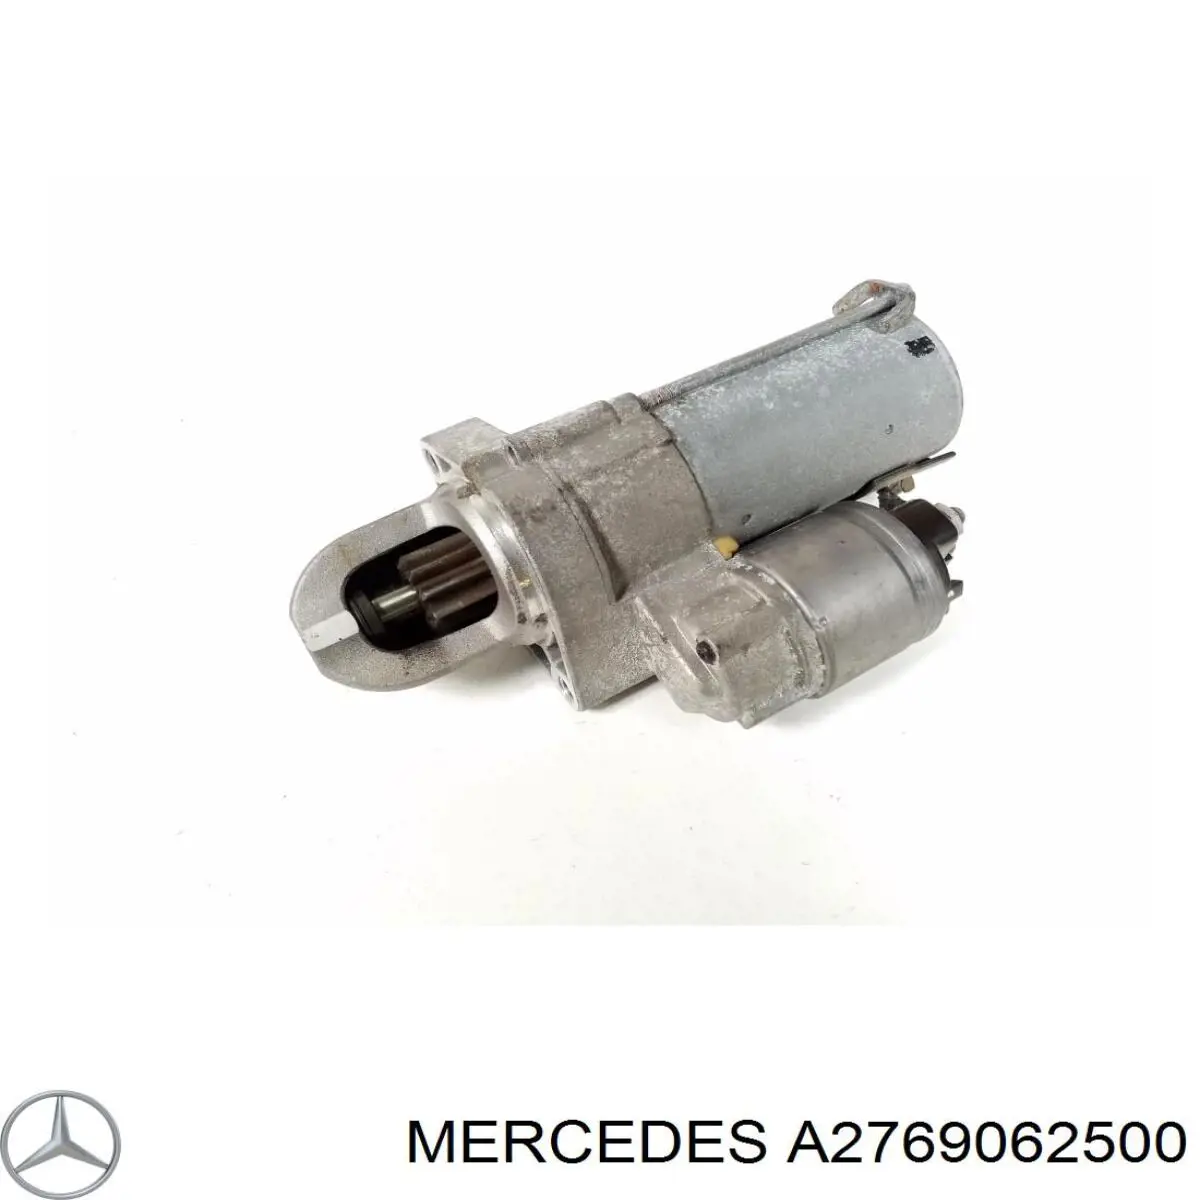 A2769062500 Mercedes motor de arranque